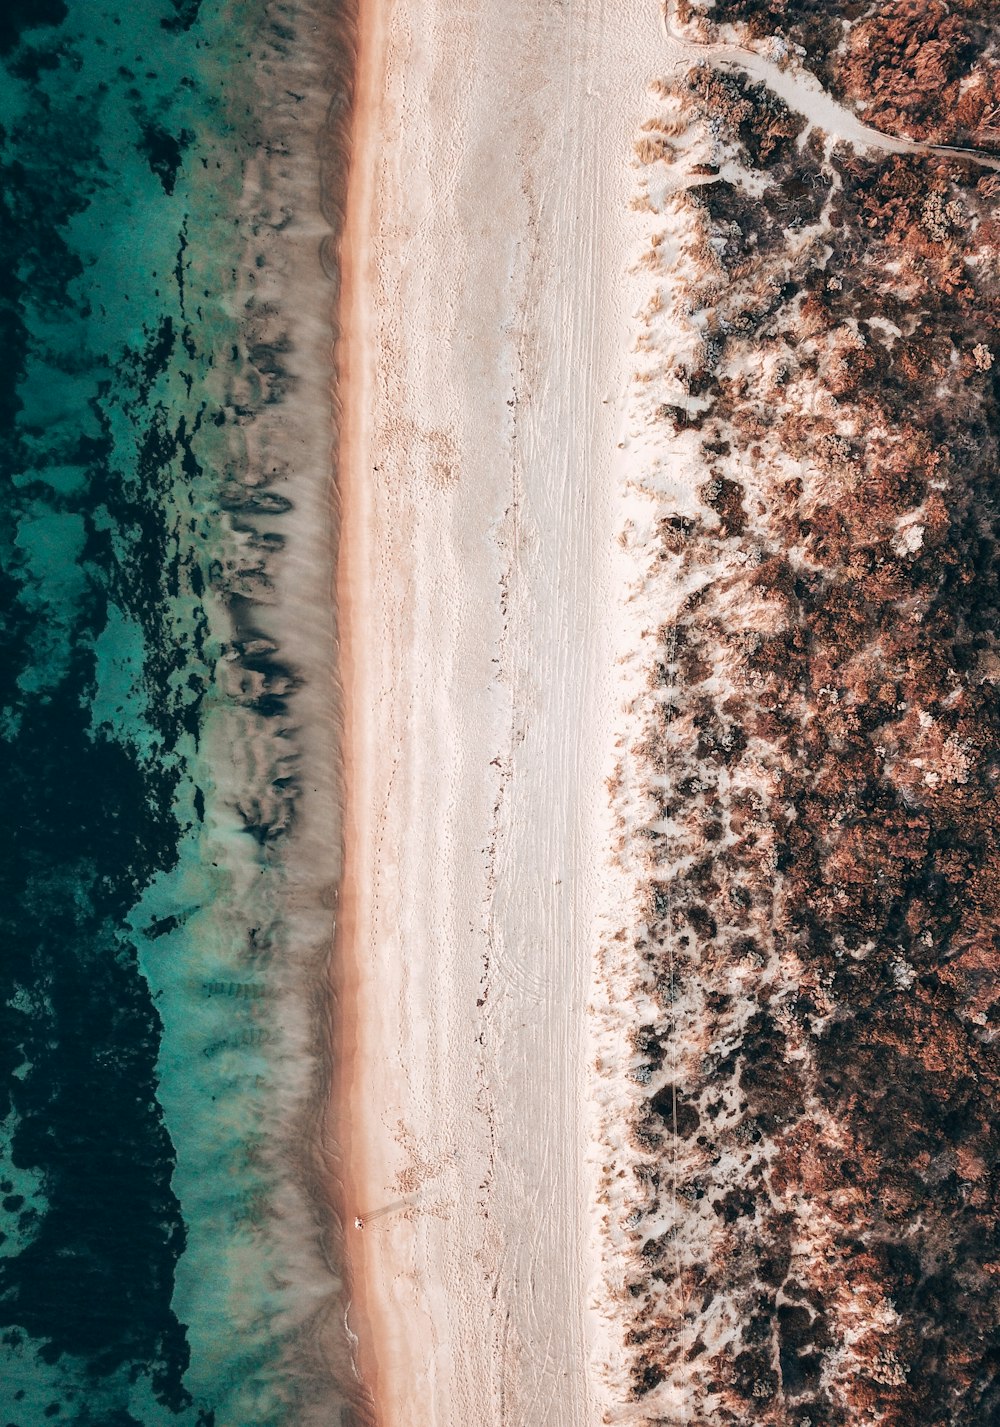 Luftaufnahme des Strandes während des Tages